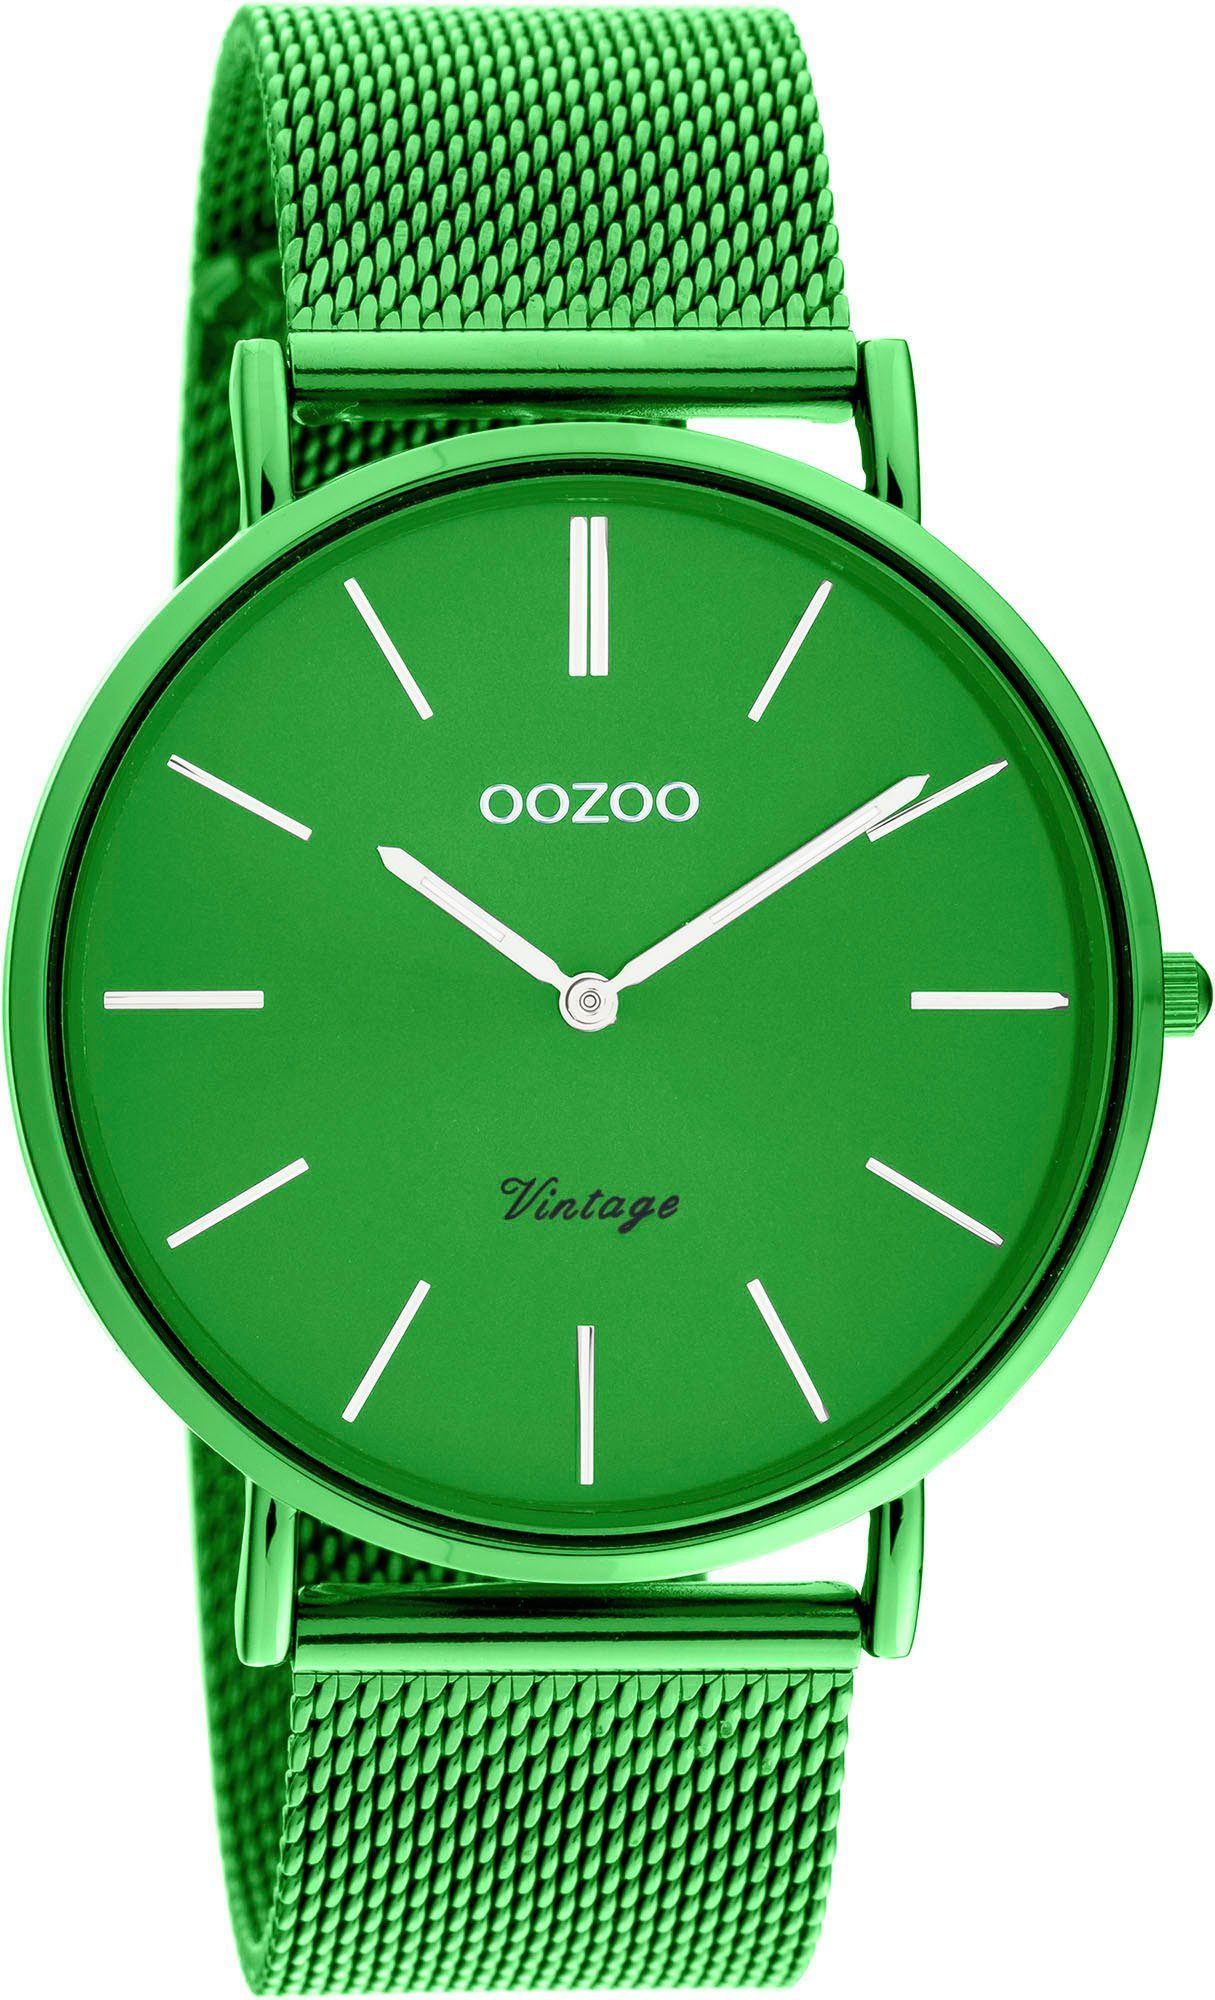 OOZOO Quarzuhr C20273, Metallgehäuse, grün IP-beschichtet, Ø ca. 40 mm